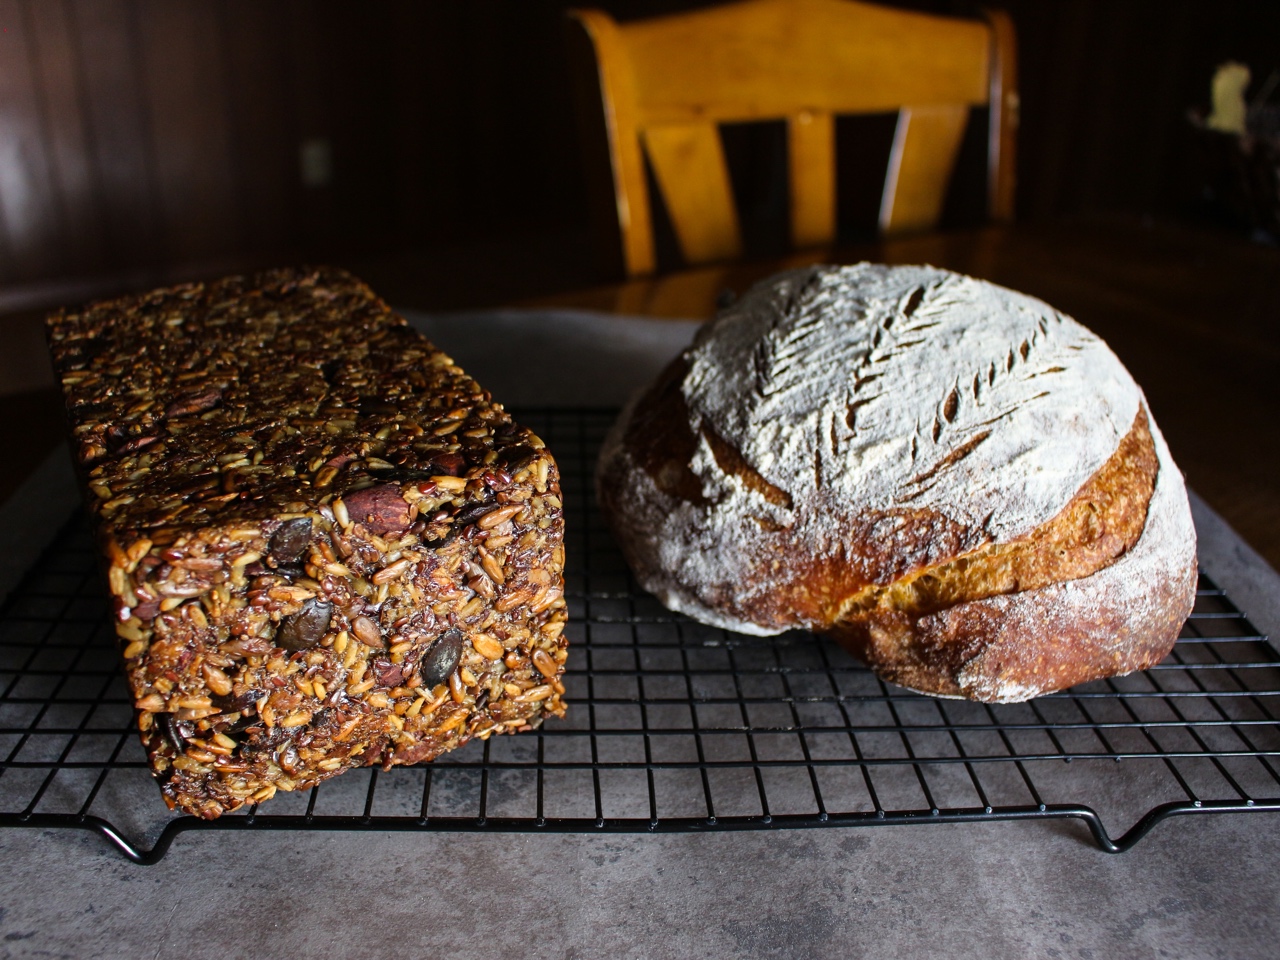 无面粉高纤能量面包丨健康·烘焙